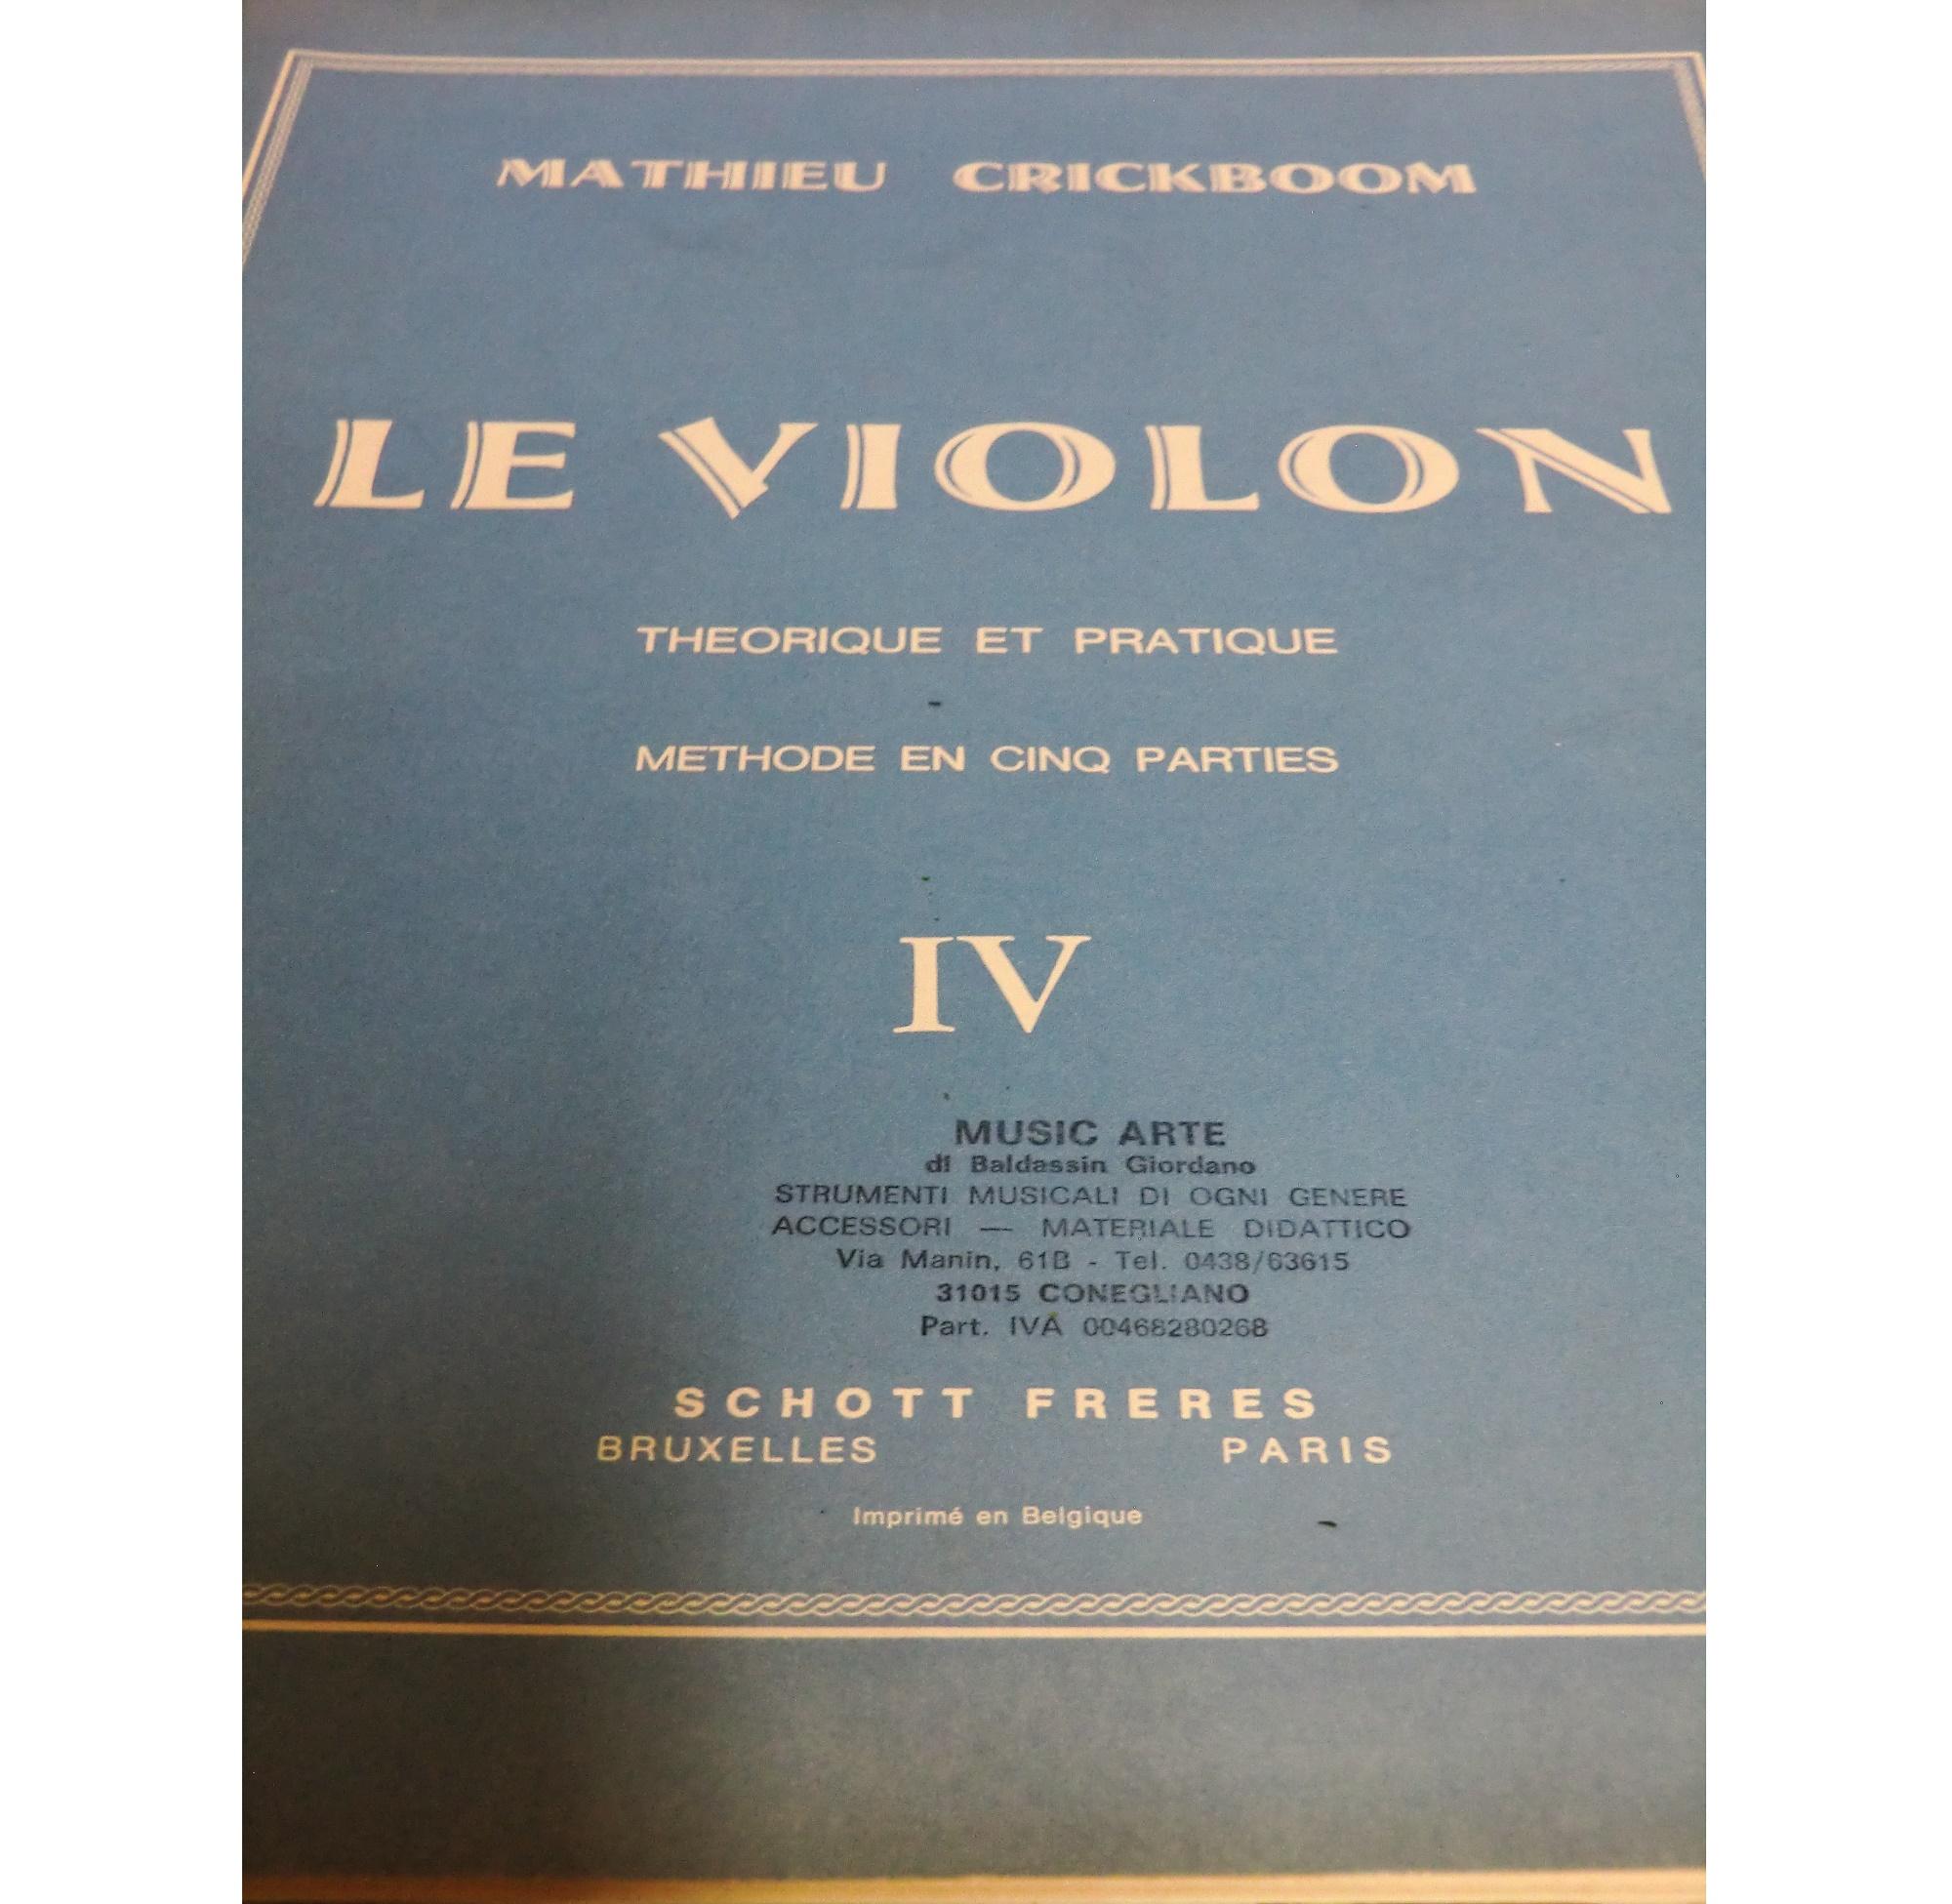 Crickboom Le Violon Theorique et pratique IV - Schott Freres